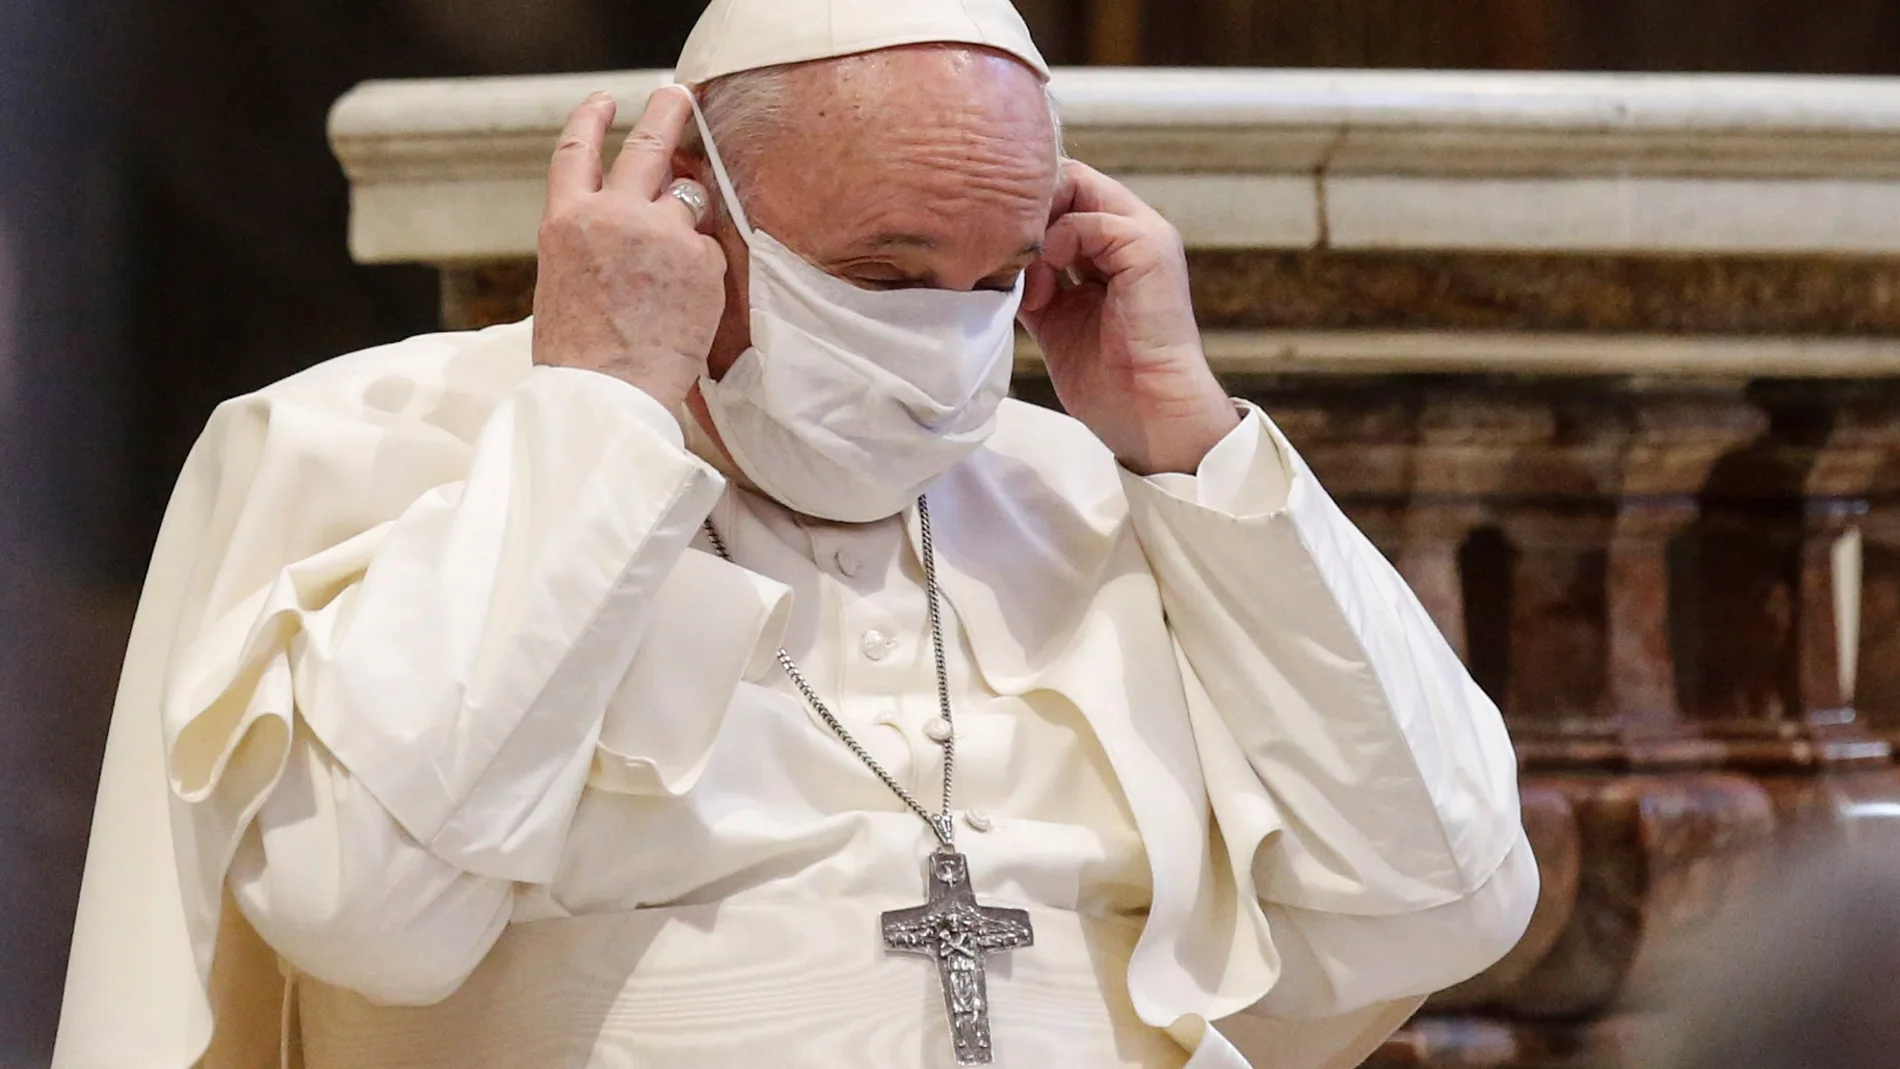 30 organizaciones católicas expresan su preocupación al Papa por las  políticas “profundamente divisivas” de Sánchez